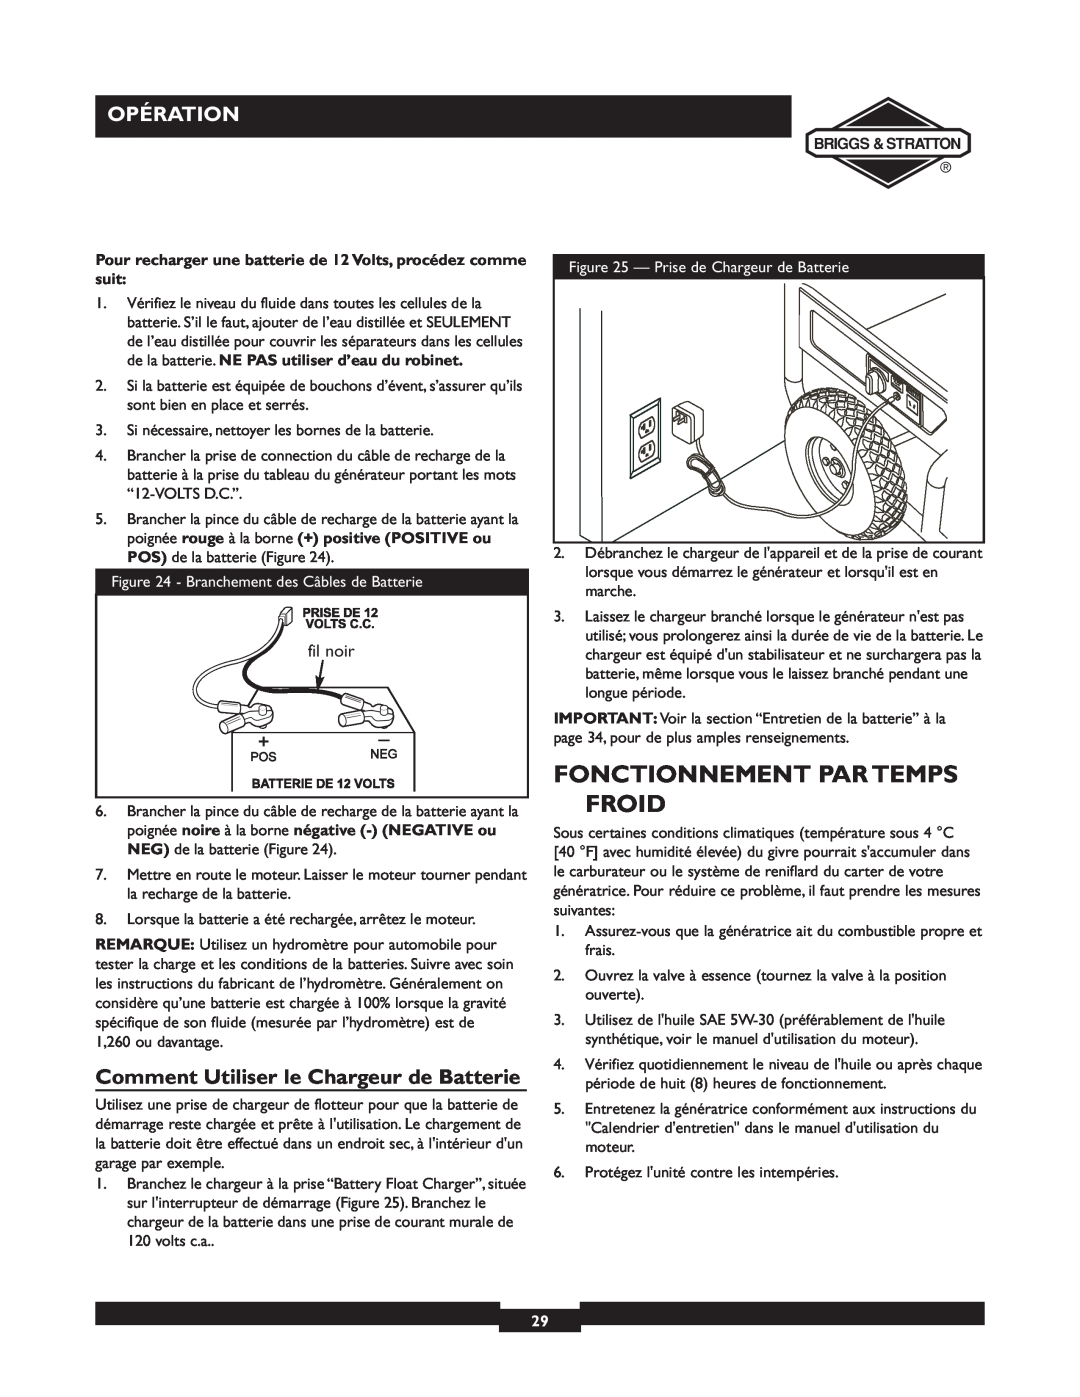 Briggs & Stratton 01894-1 manual Fonctionnement Par Temps Froid, Comment Utiliser le Chargeur de Batterie, Opération 